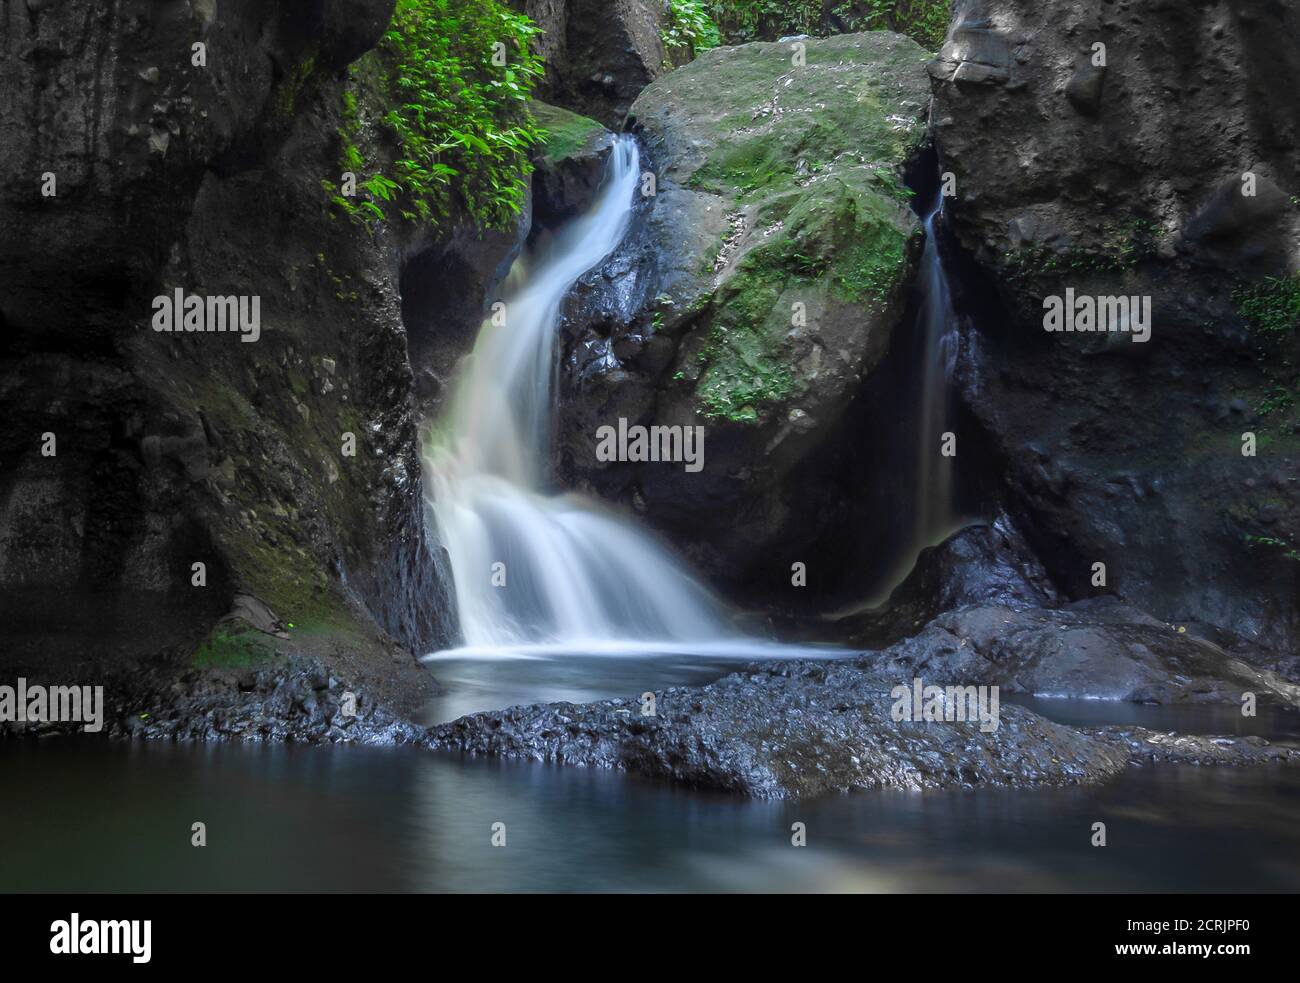 Waterfalls, Laguna, Philippines Stock Photo